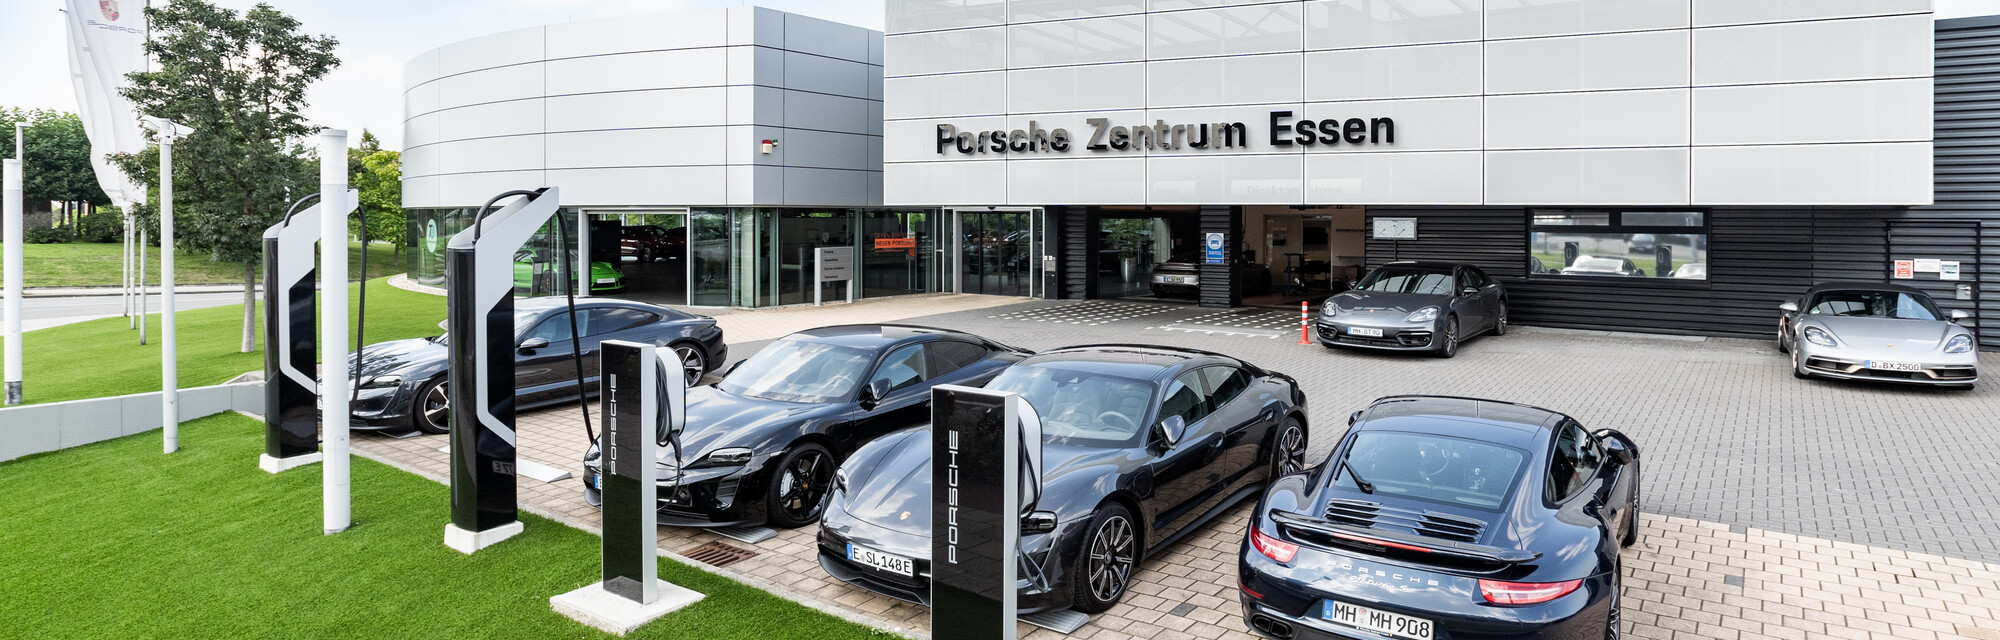 Porsche Zentrum Essen